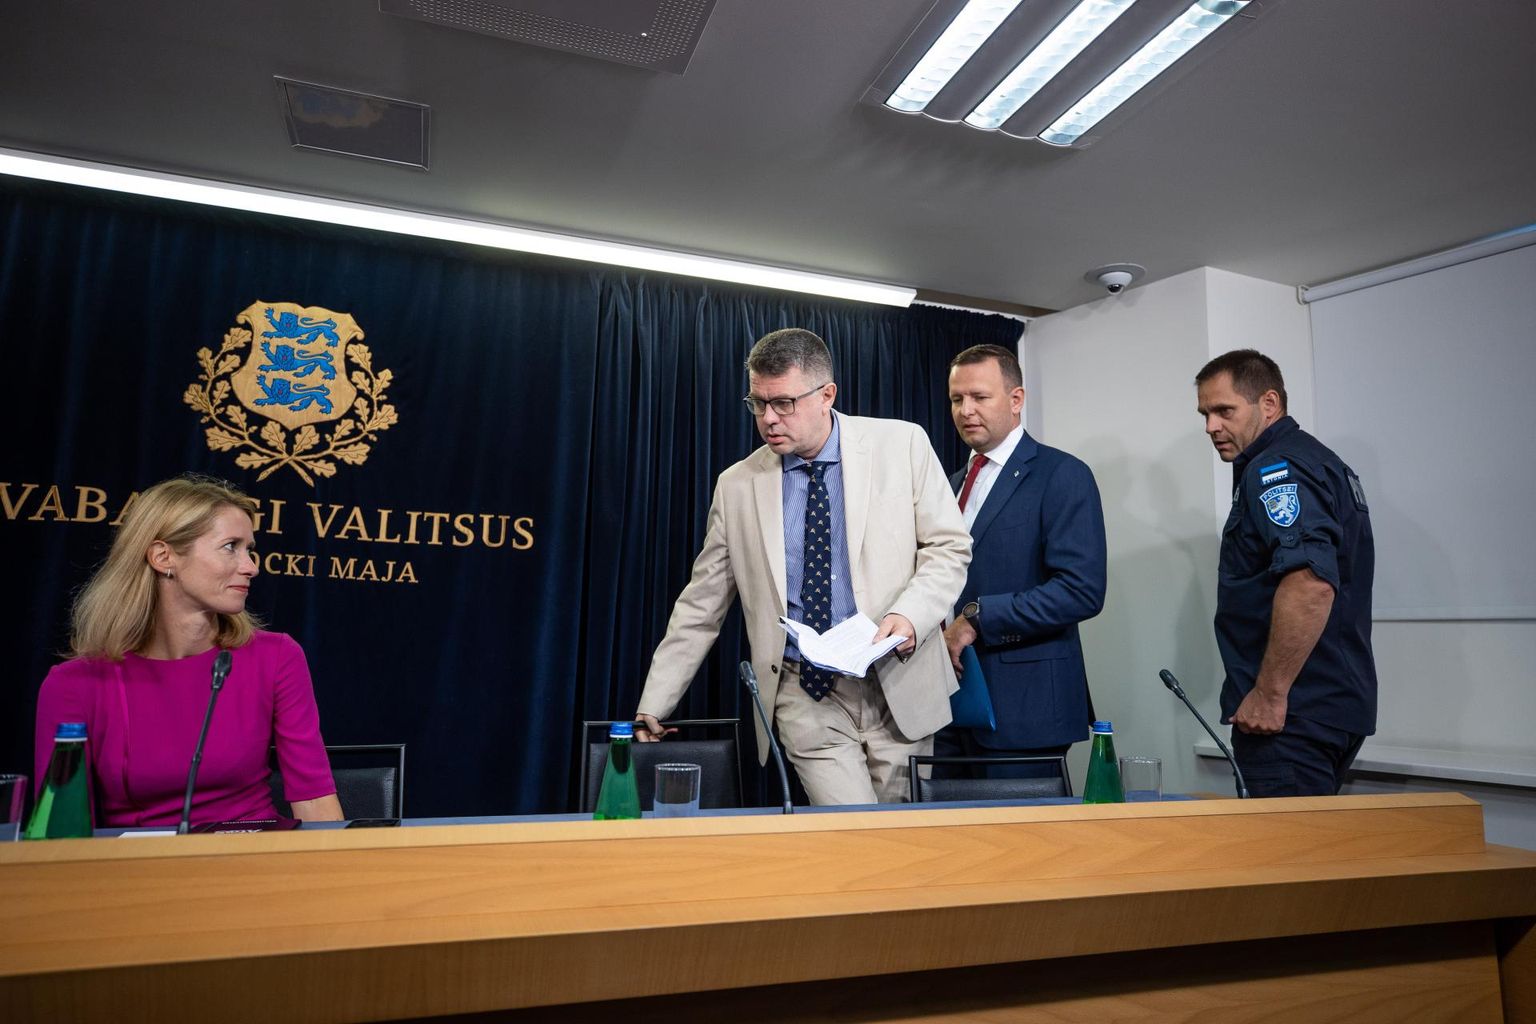 Valitsuse pressikonverents. Peaminister Kaja Kallas, välisminister Urmas Reinsalu, siseminister Lauri Läänemets ja politseijuht Elmar Vaher.